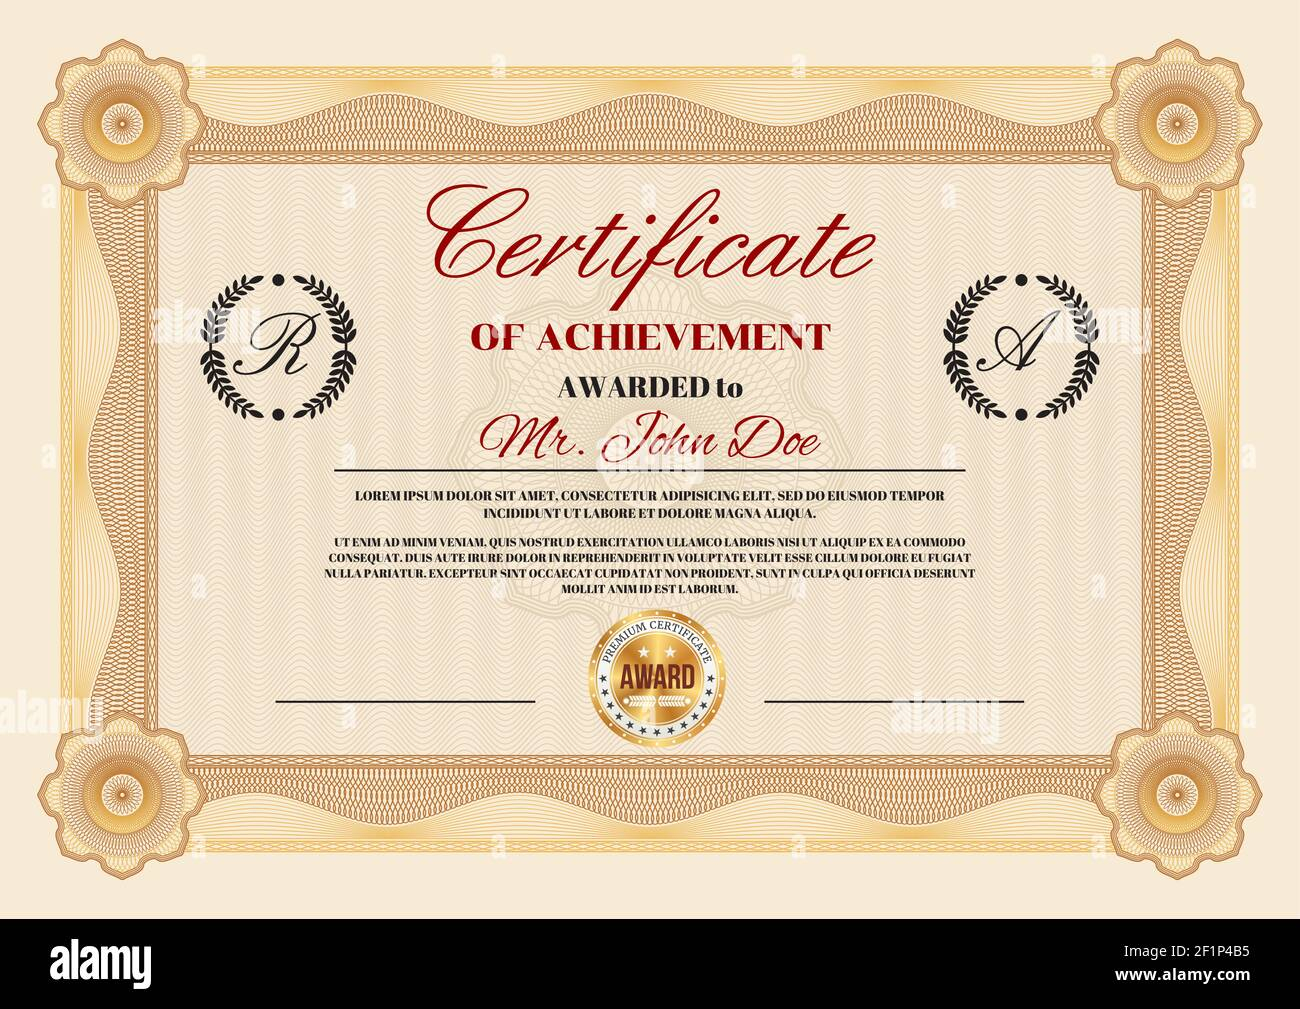 Zertifikat Für Leistung Und Anerkennung Diplom Vektor Vorlage Mit  Within First Place Award Certificate Template